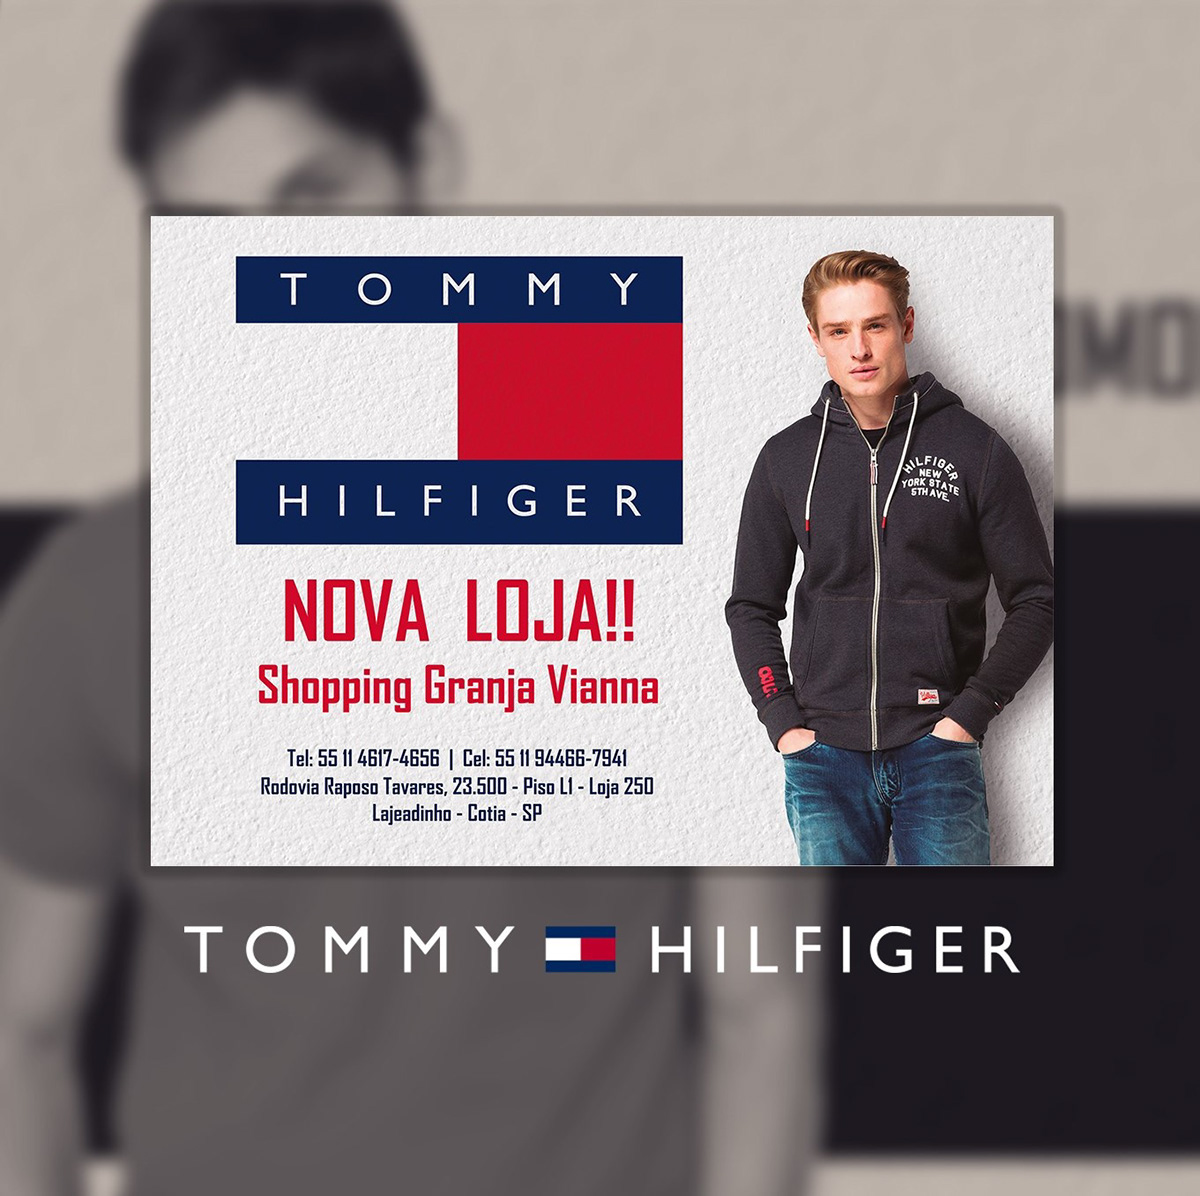 Tommy hilfiger - Granja Viana (Divulgação) :: Behance